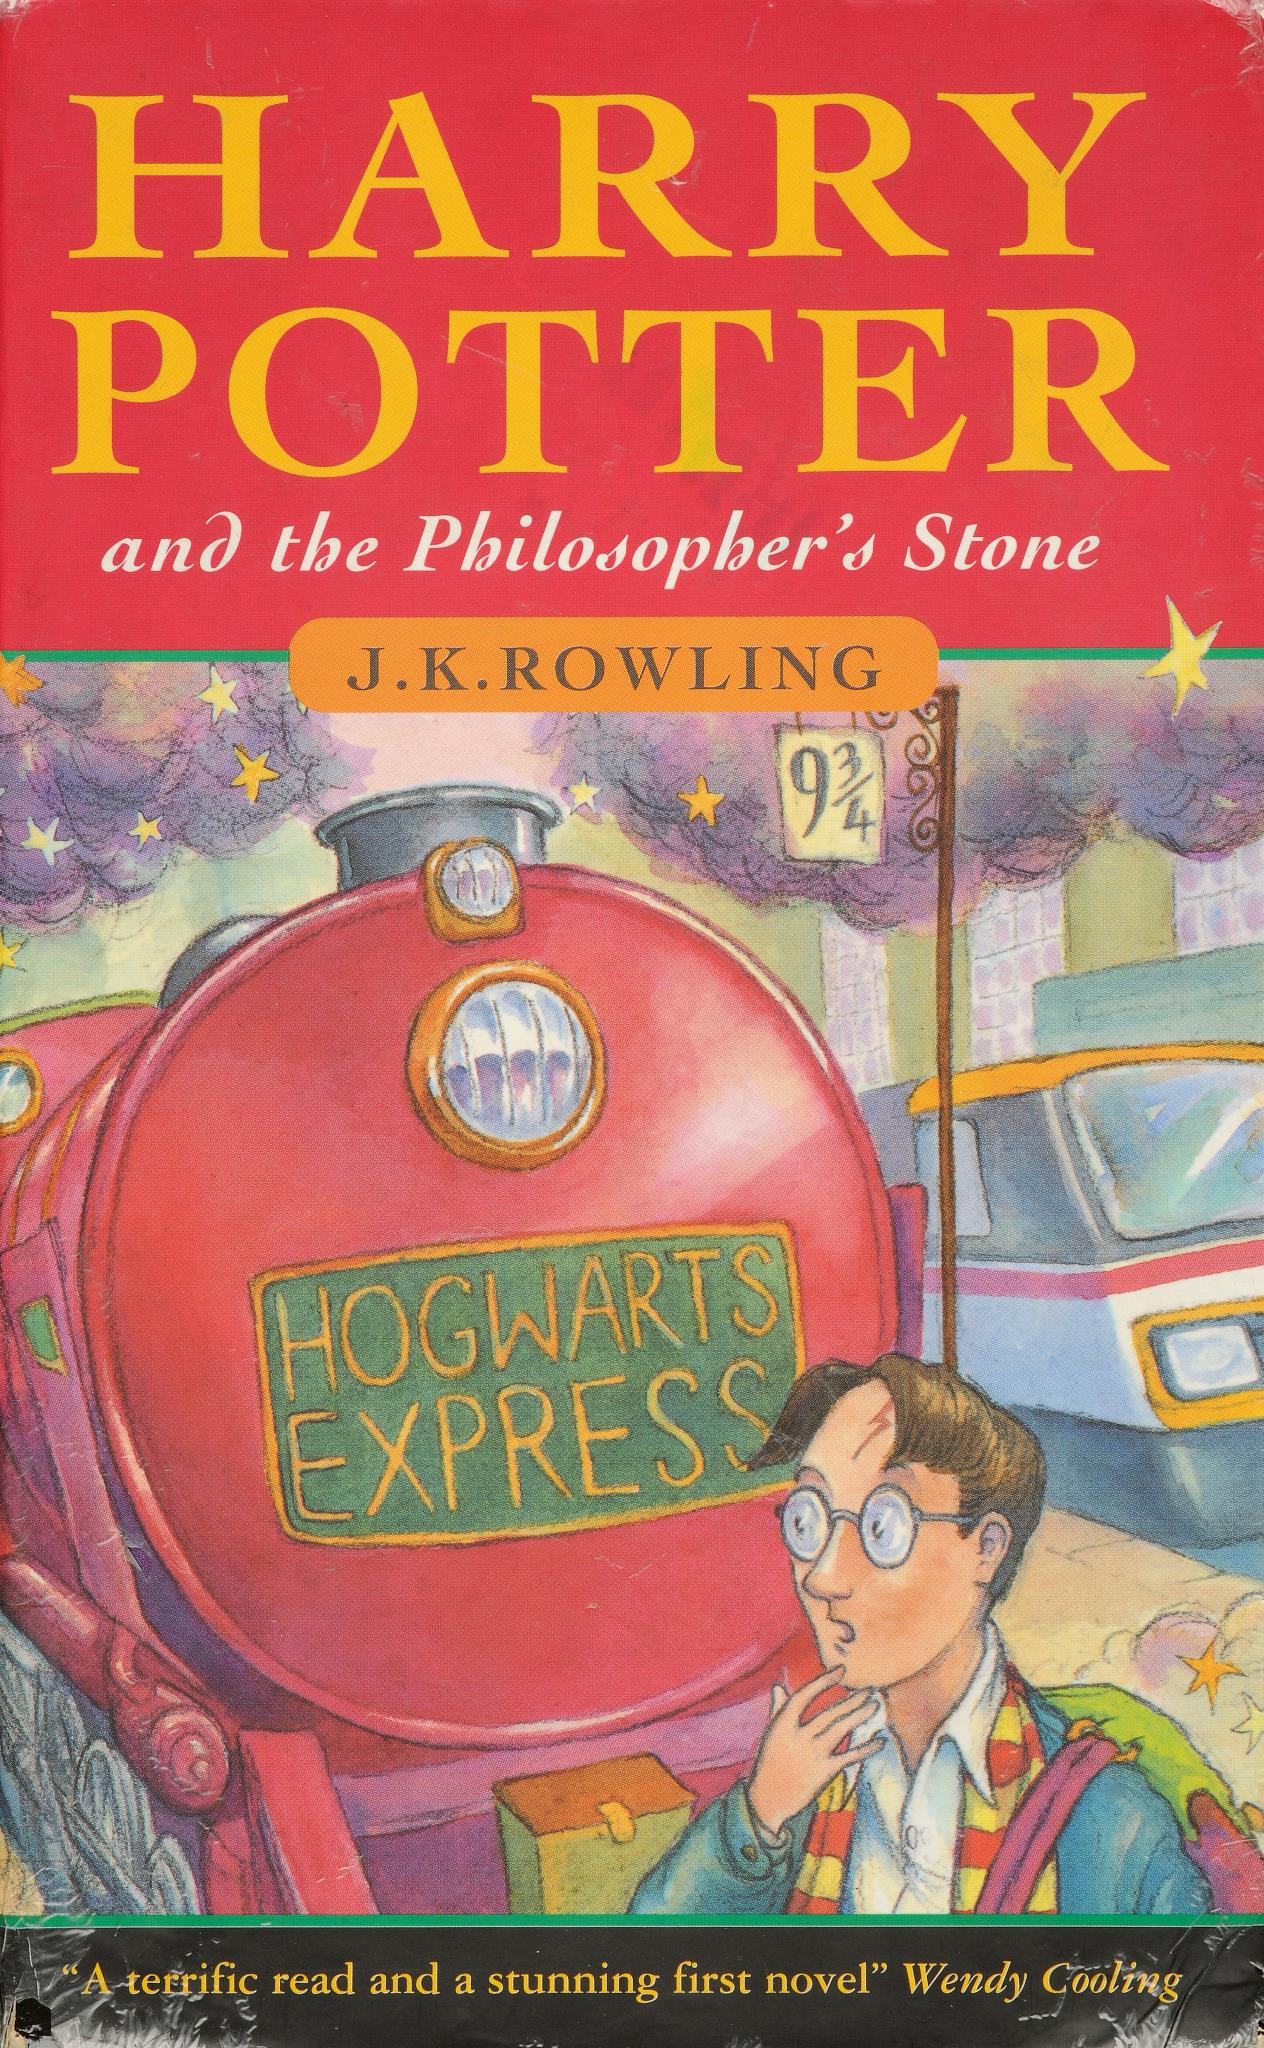 Harry Potter + Philosopher's Stone